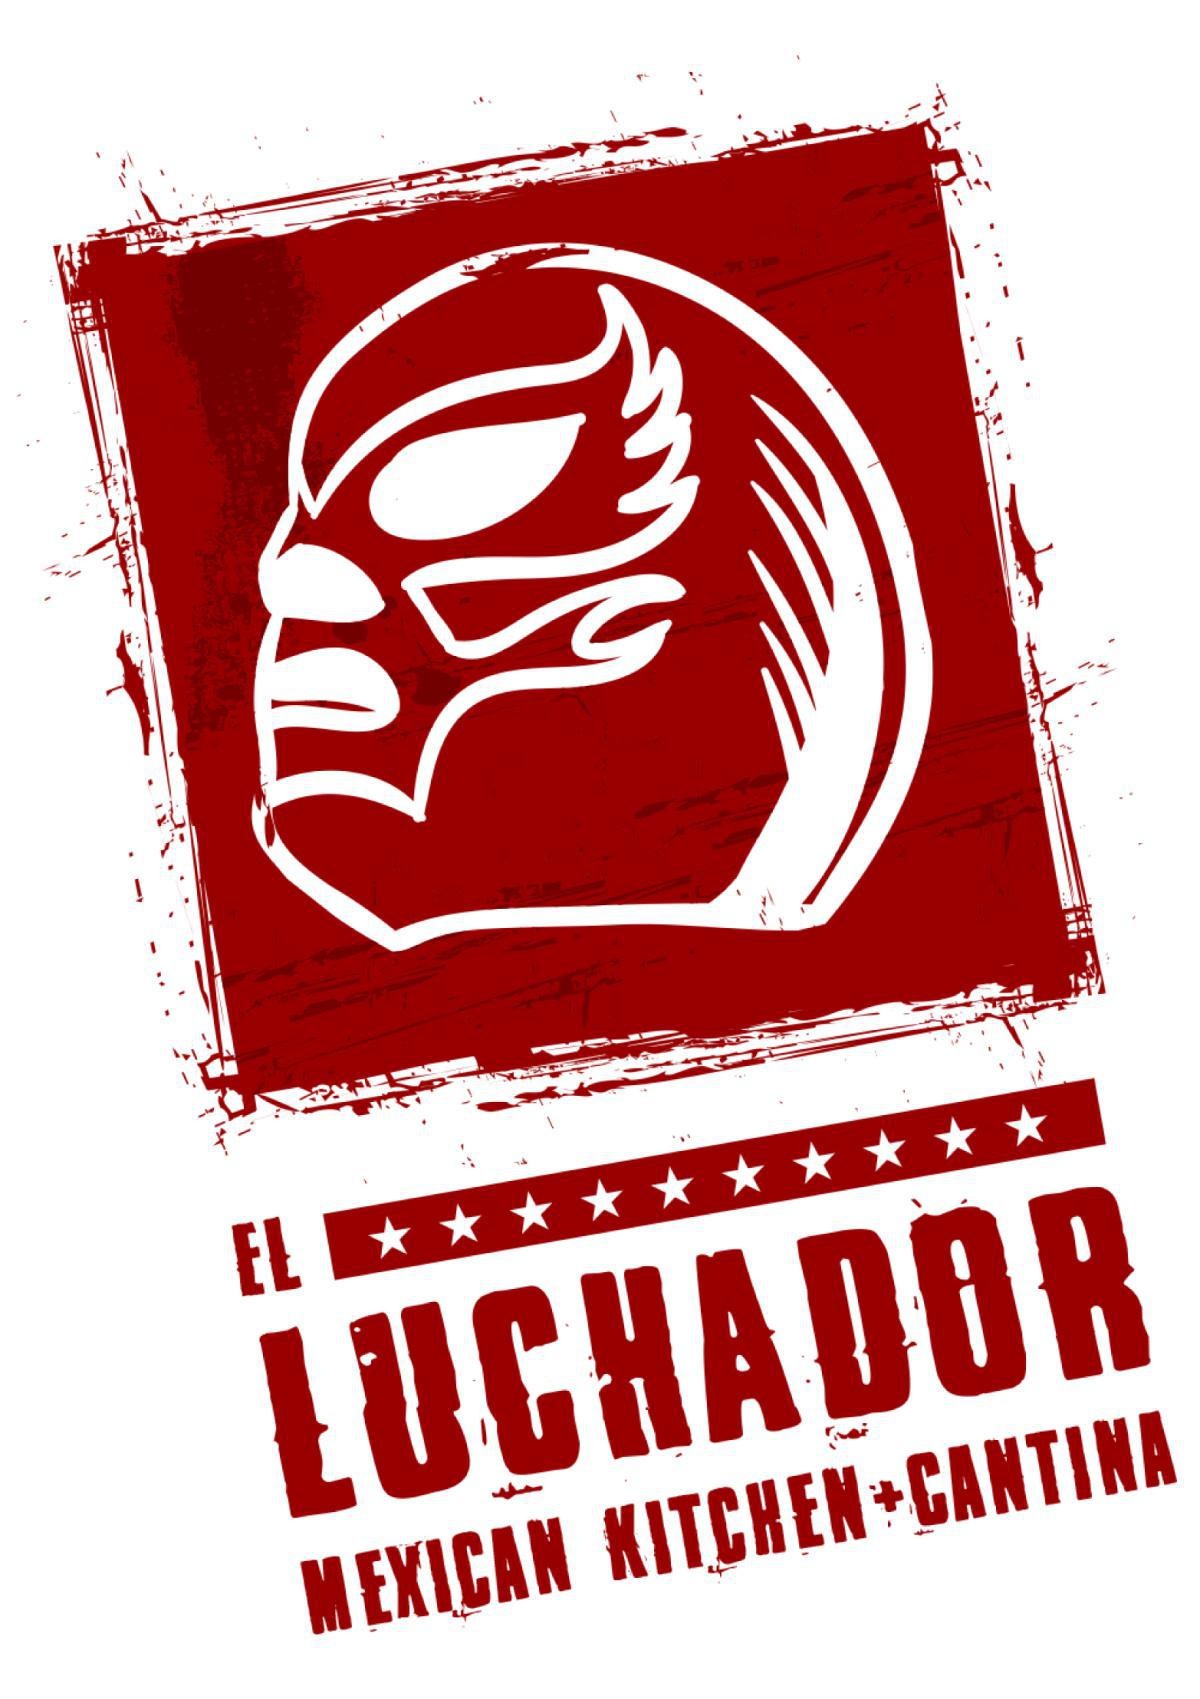 El Luchador Mexican Kitchen + Cantina @ Blue Diamond Rd. 